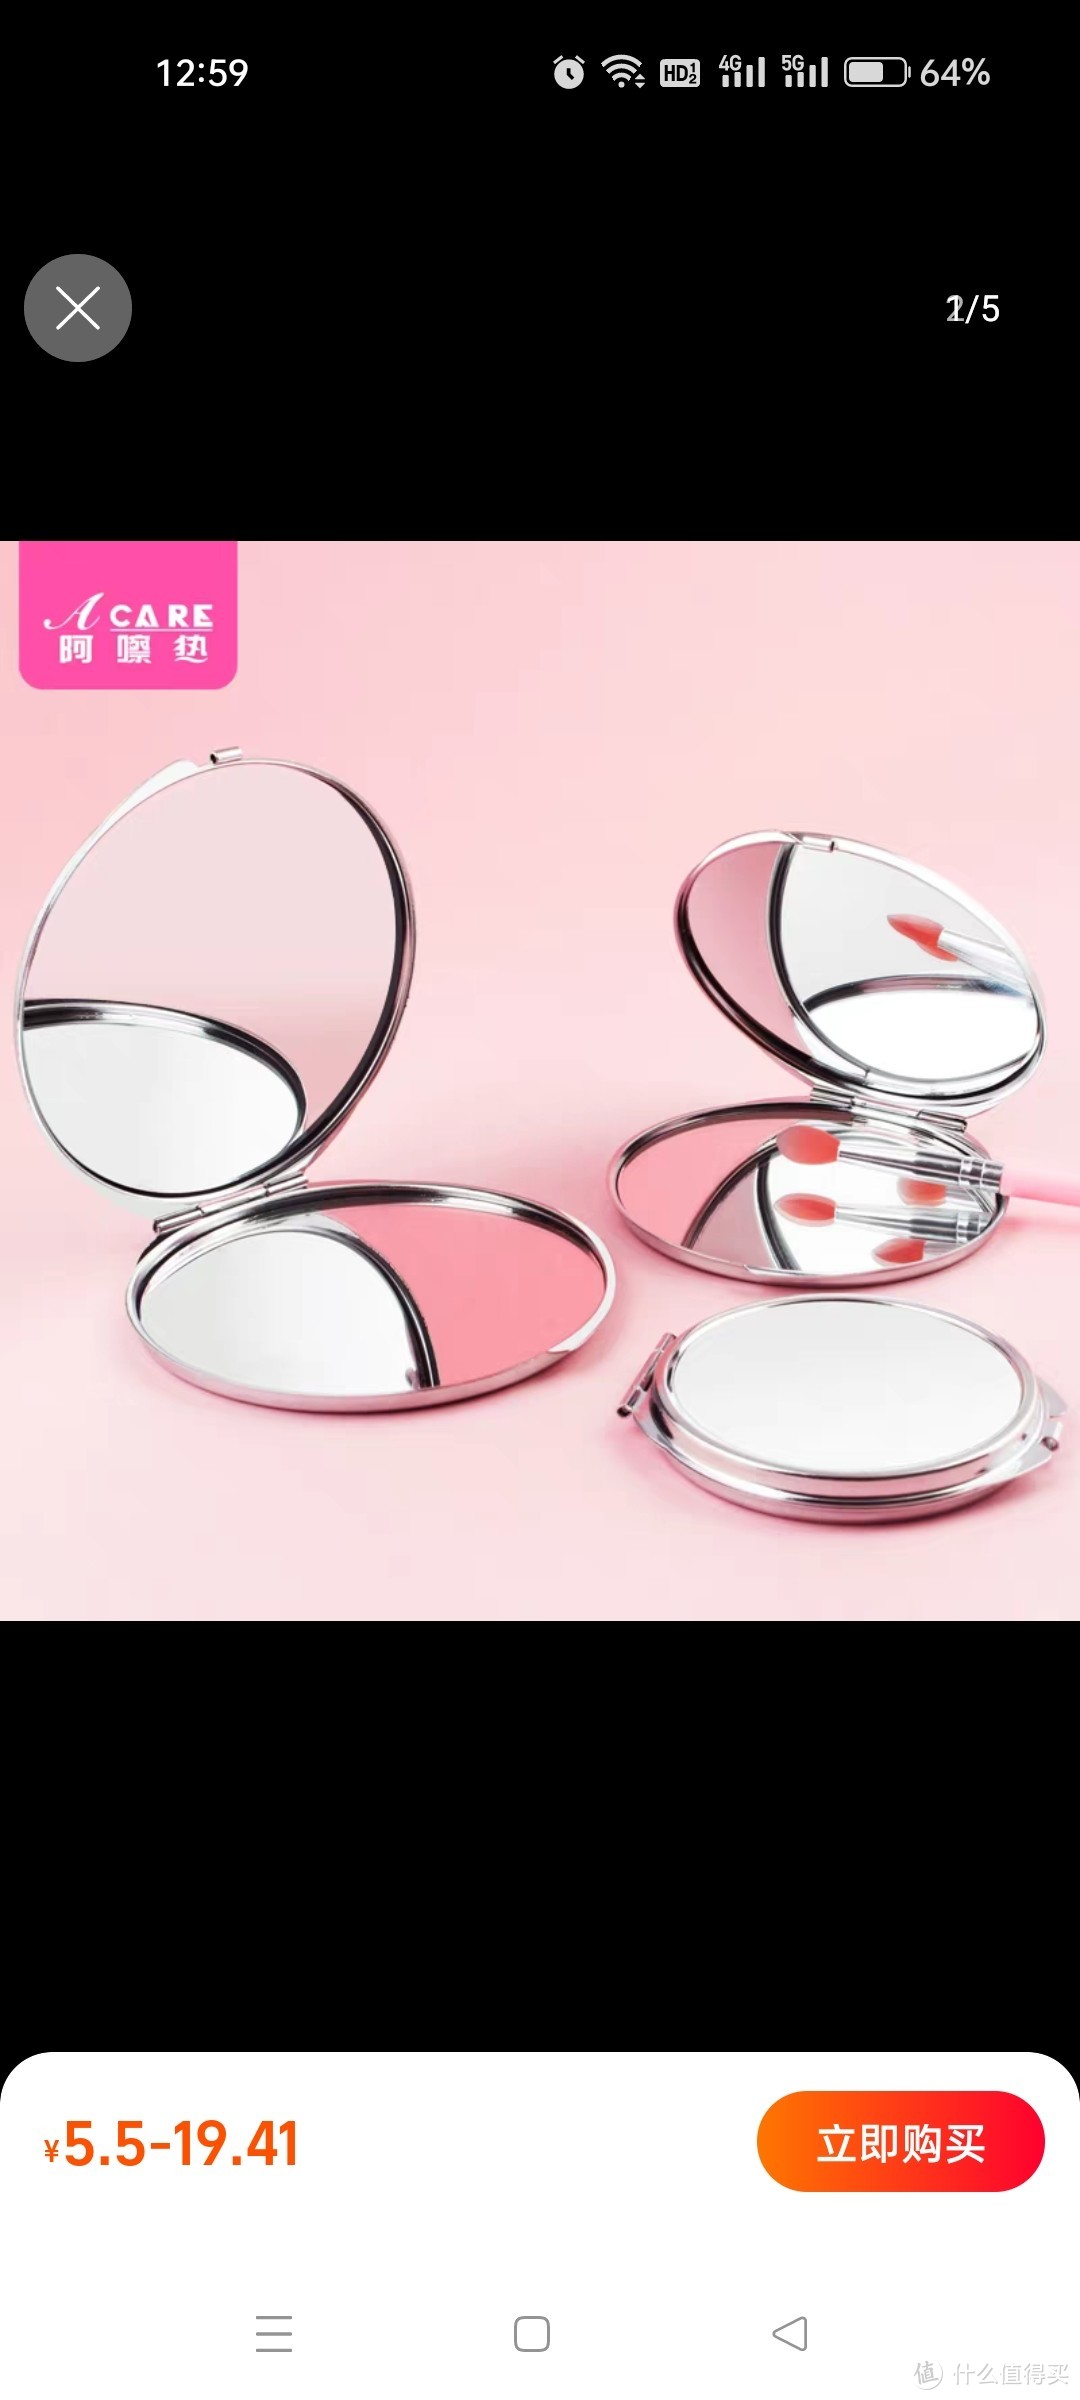 特惠艾呵普镜子便携小圆镜化妆镜可折叠放大化妆镜女男翻盖不锈钢